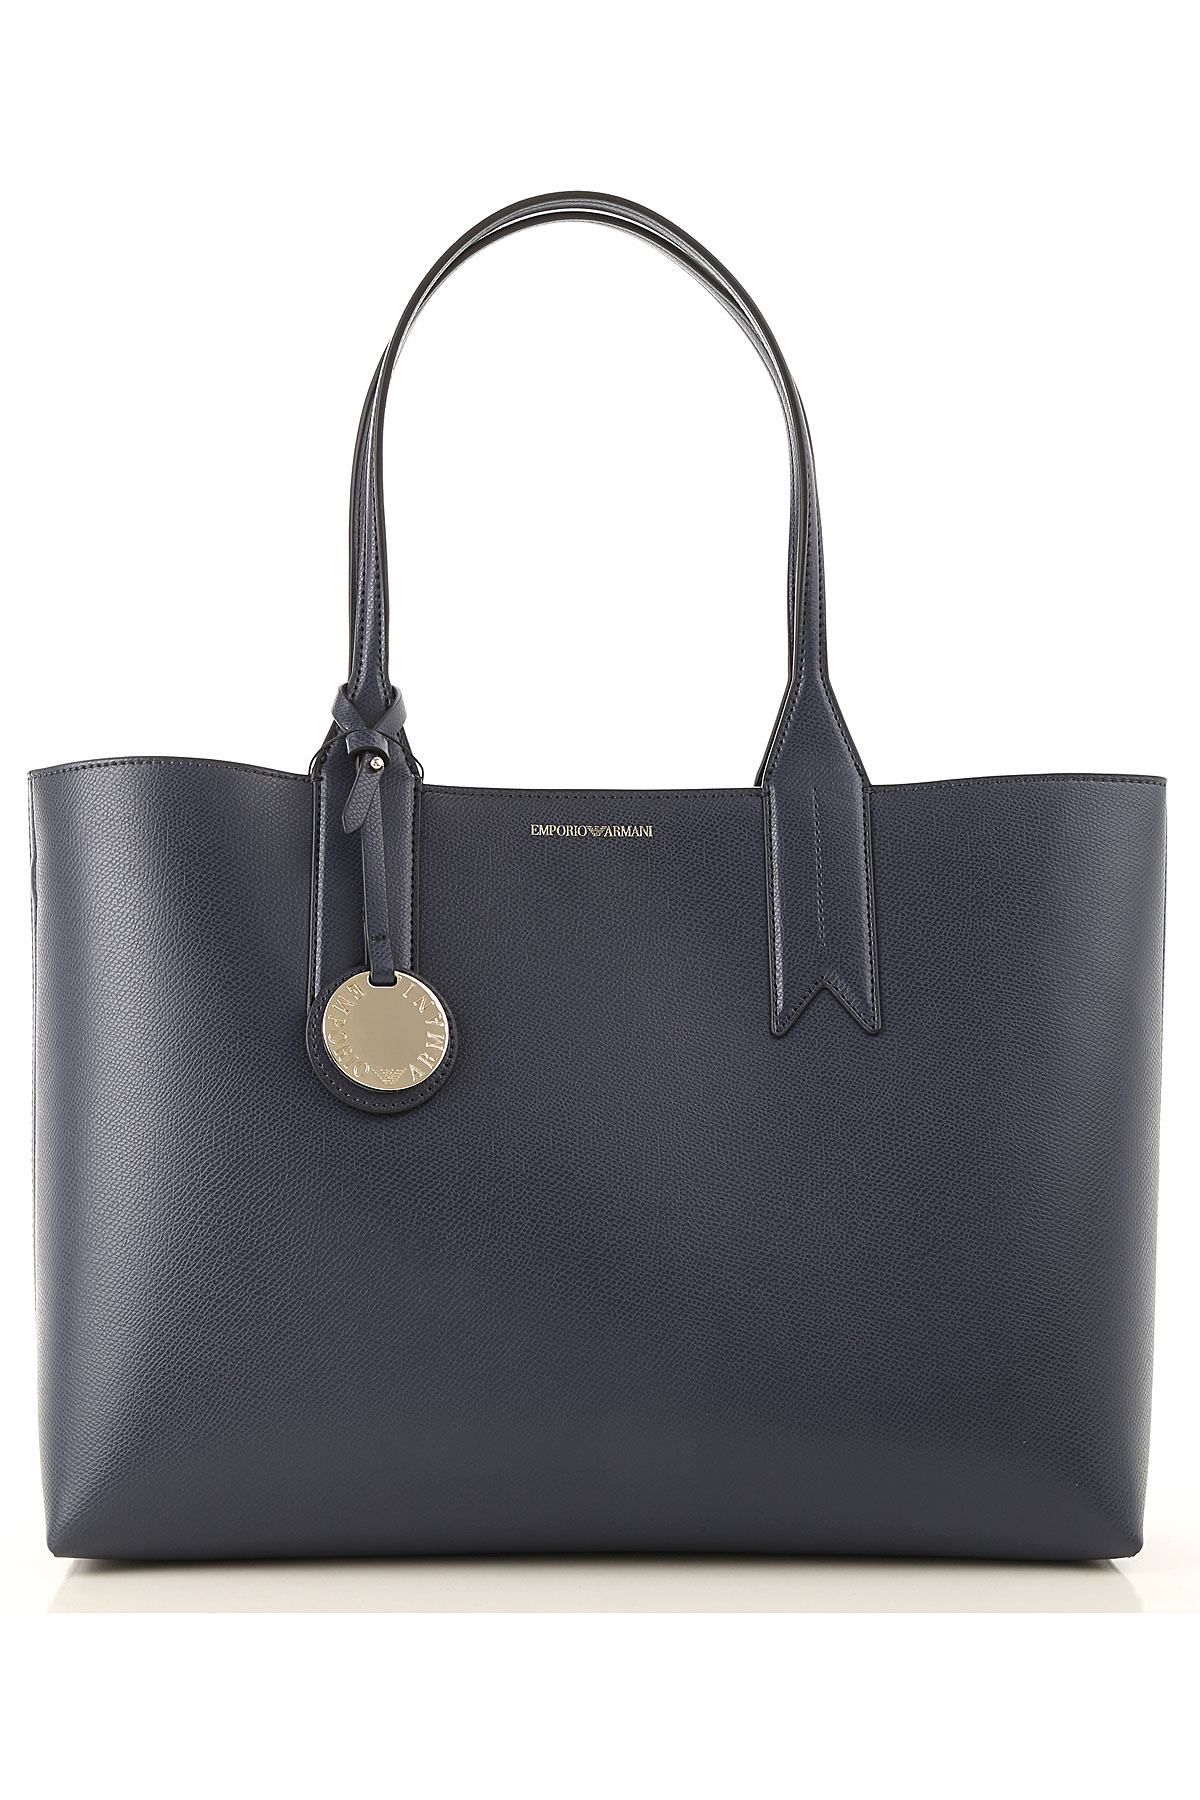 Handbags Emporio Armani, Style code: y3d081-yh15a-88293